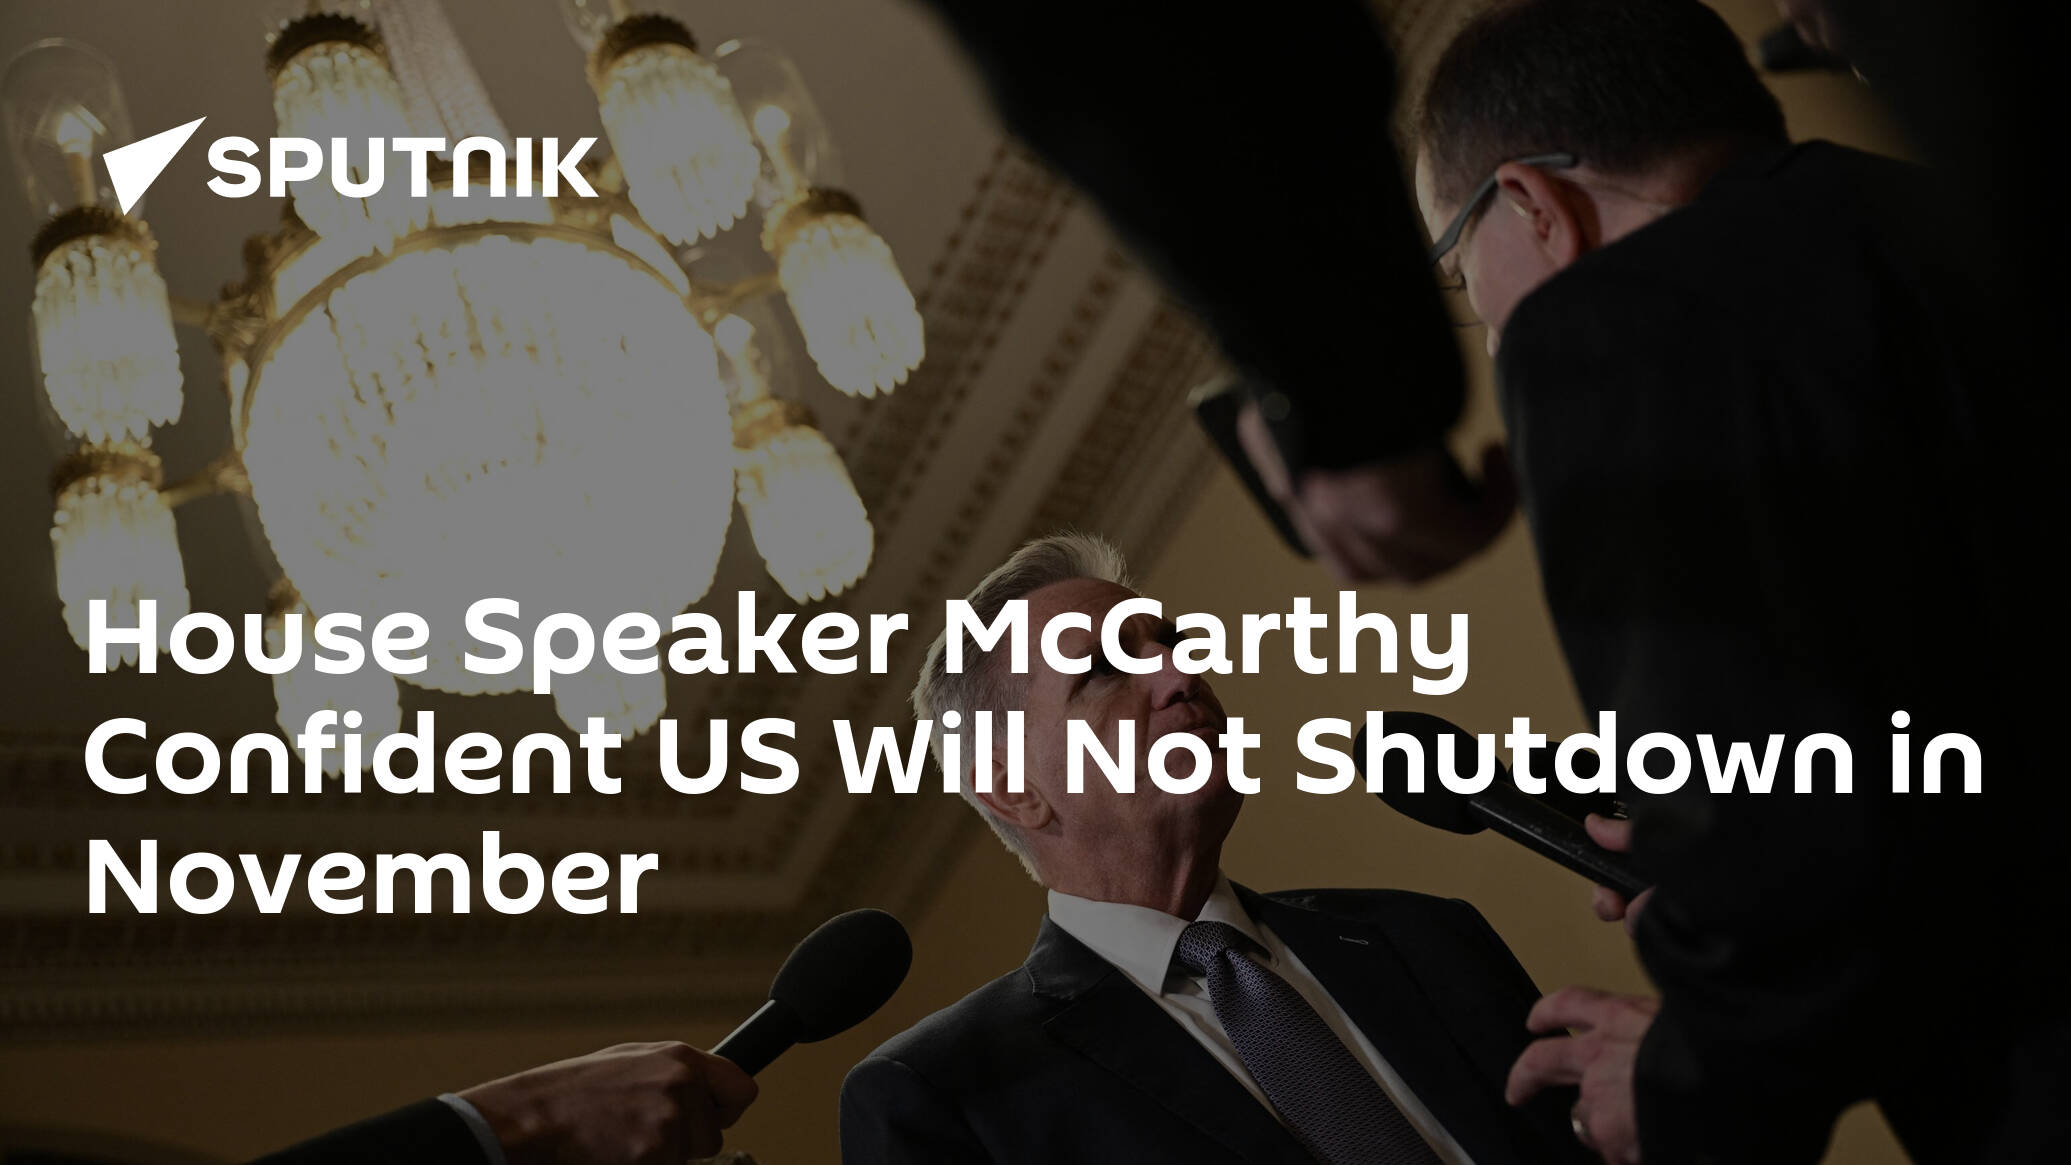 House Speaker McCarthy Expresses Confidence US Will Avoid Shutdown in November